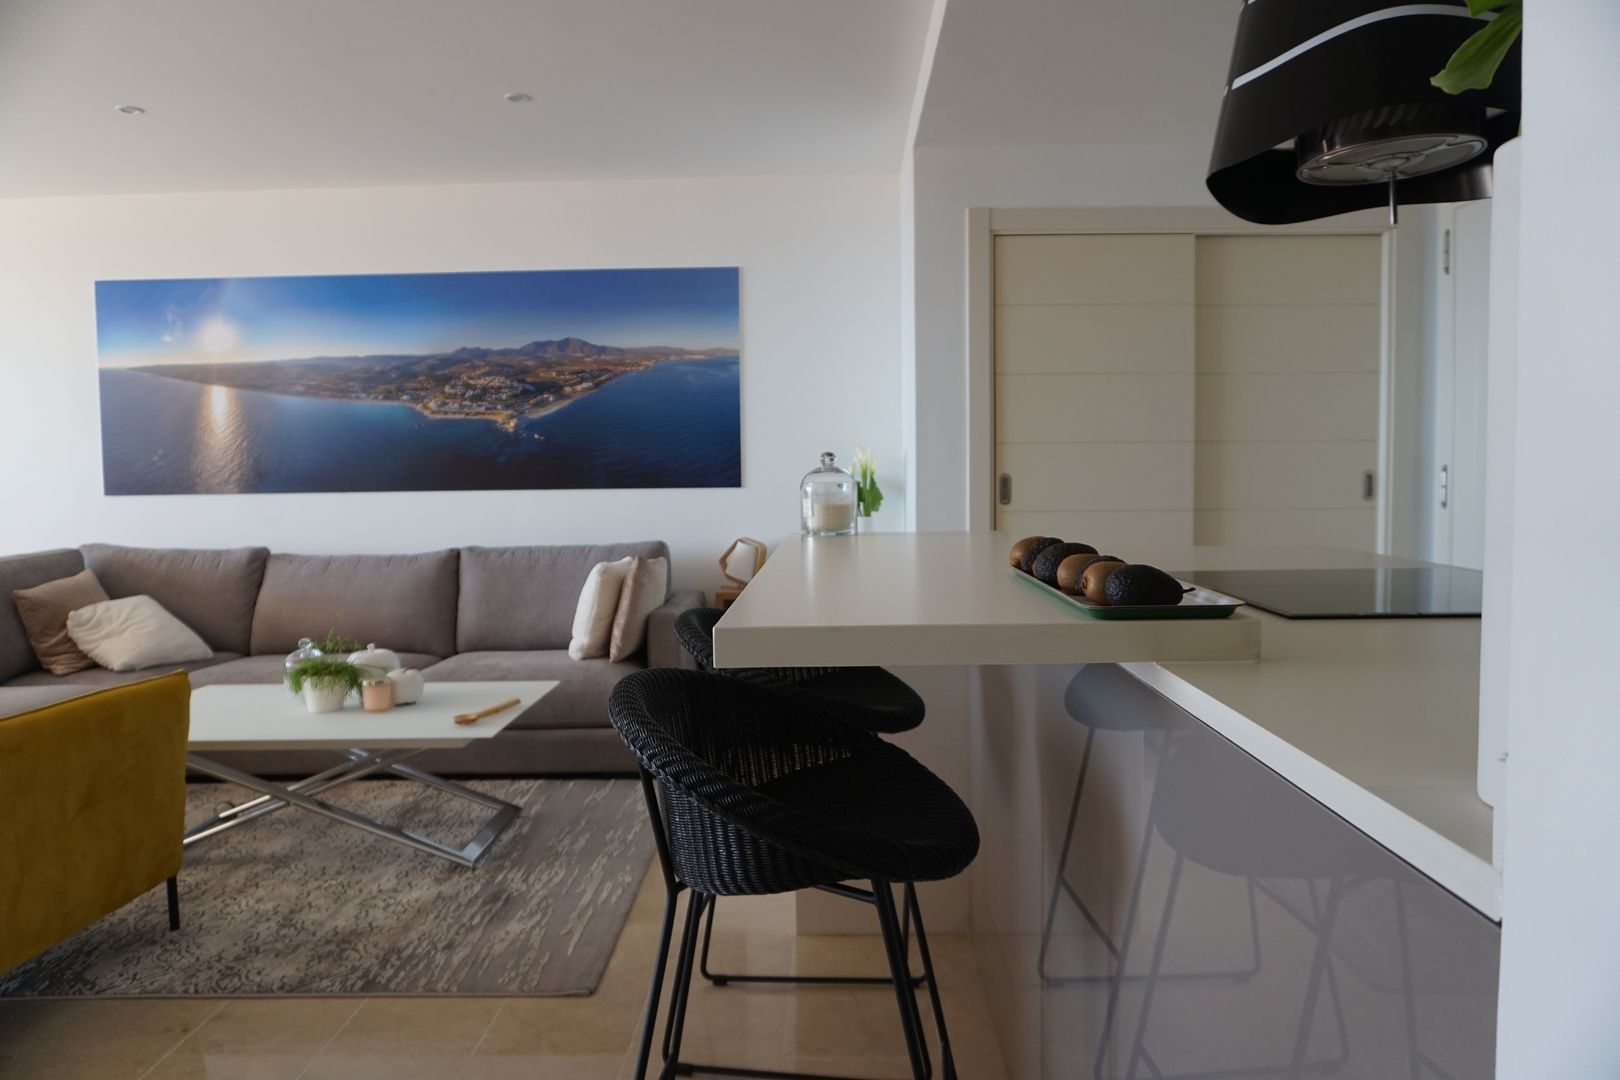 Proyecto e instalación de cocina moderna abierta al salón en Málaga, Decodan - Estudio de cocinas y armarios en Estepona y Marbella Decodan - Estudio de cocinas y armarios en Estepona y Marbella Einbauküche